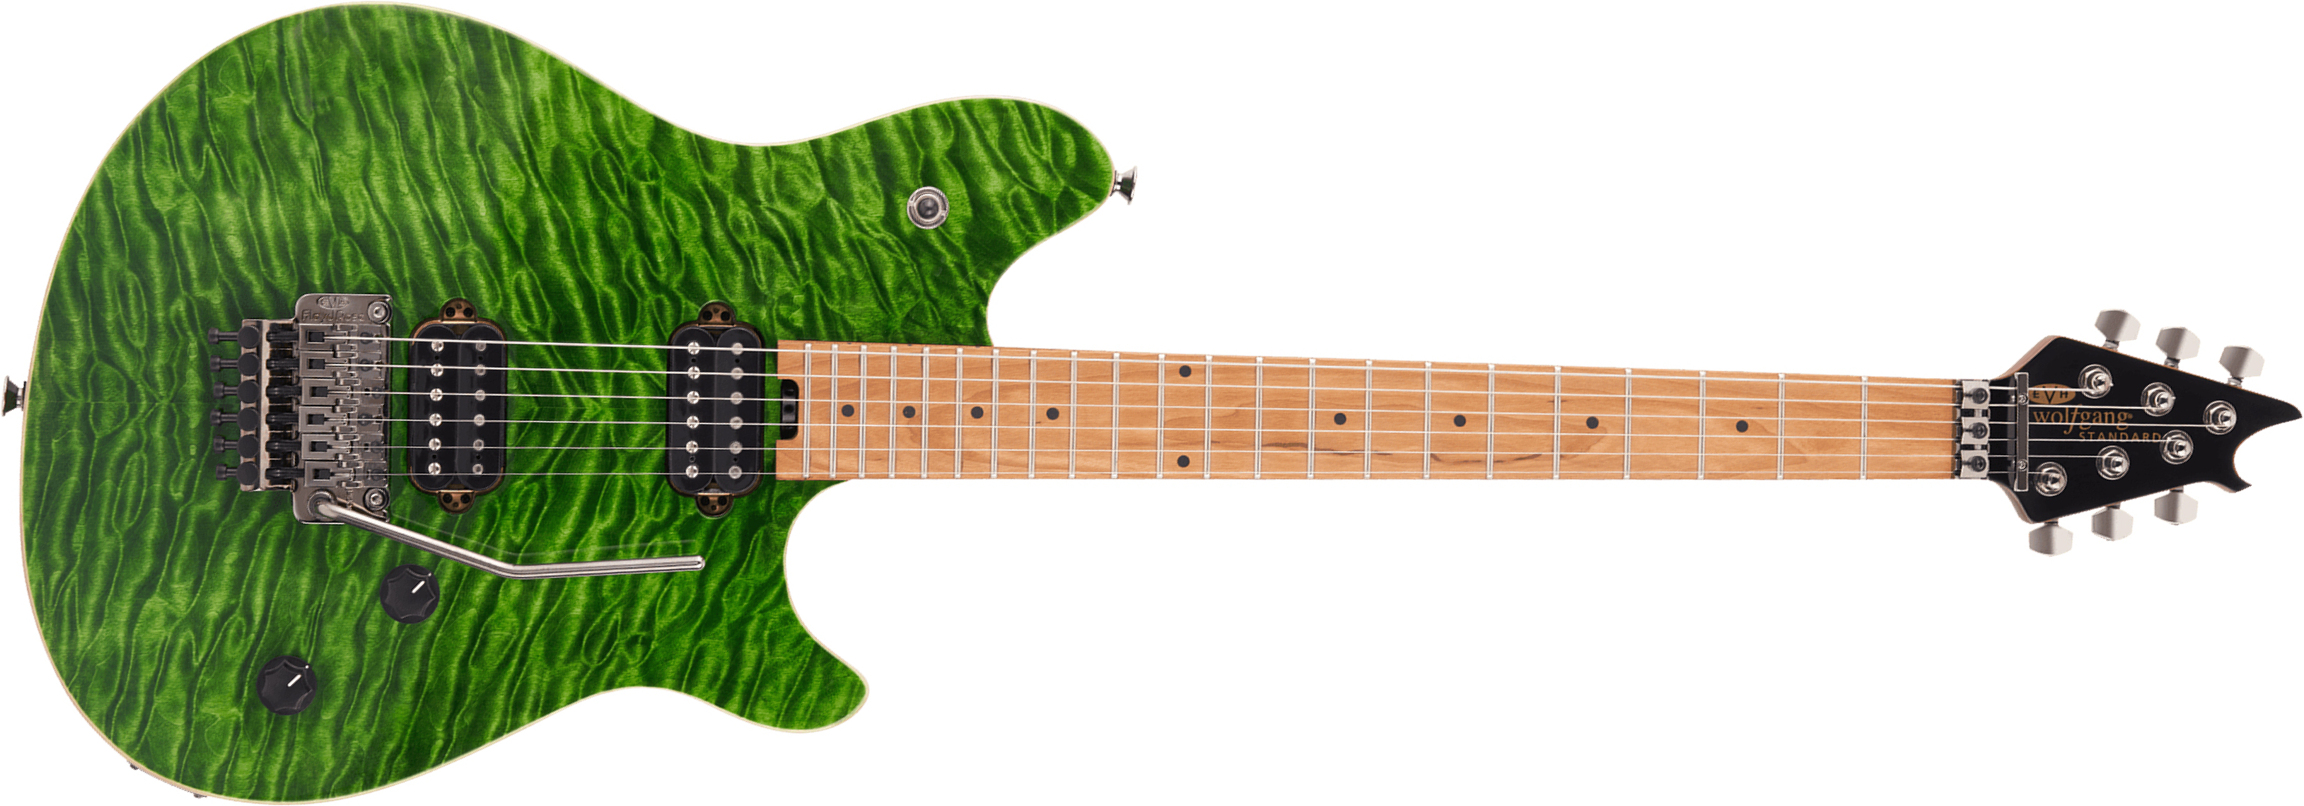 Evh Wolfgang Wg Standard Qm 2h  Fr Mn - Transparent Green - Metalen elektrische gitaar - Main picture